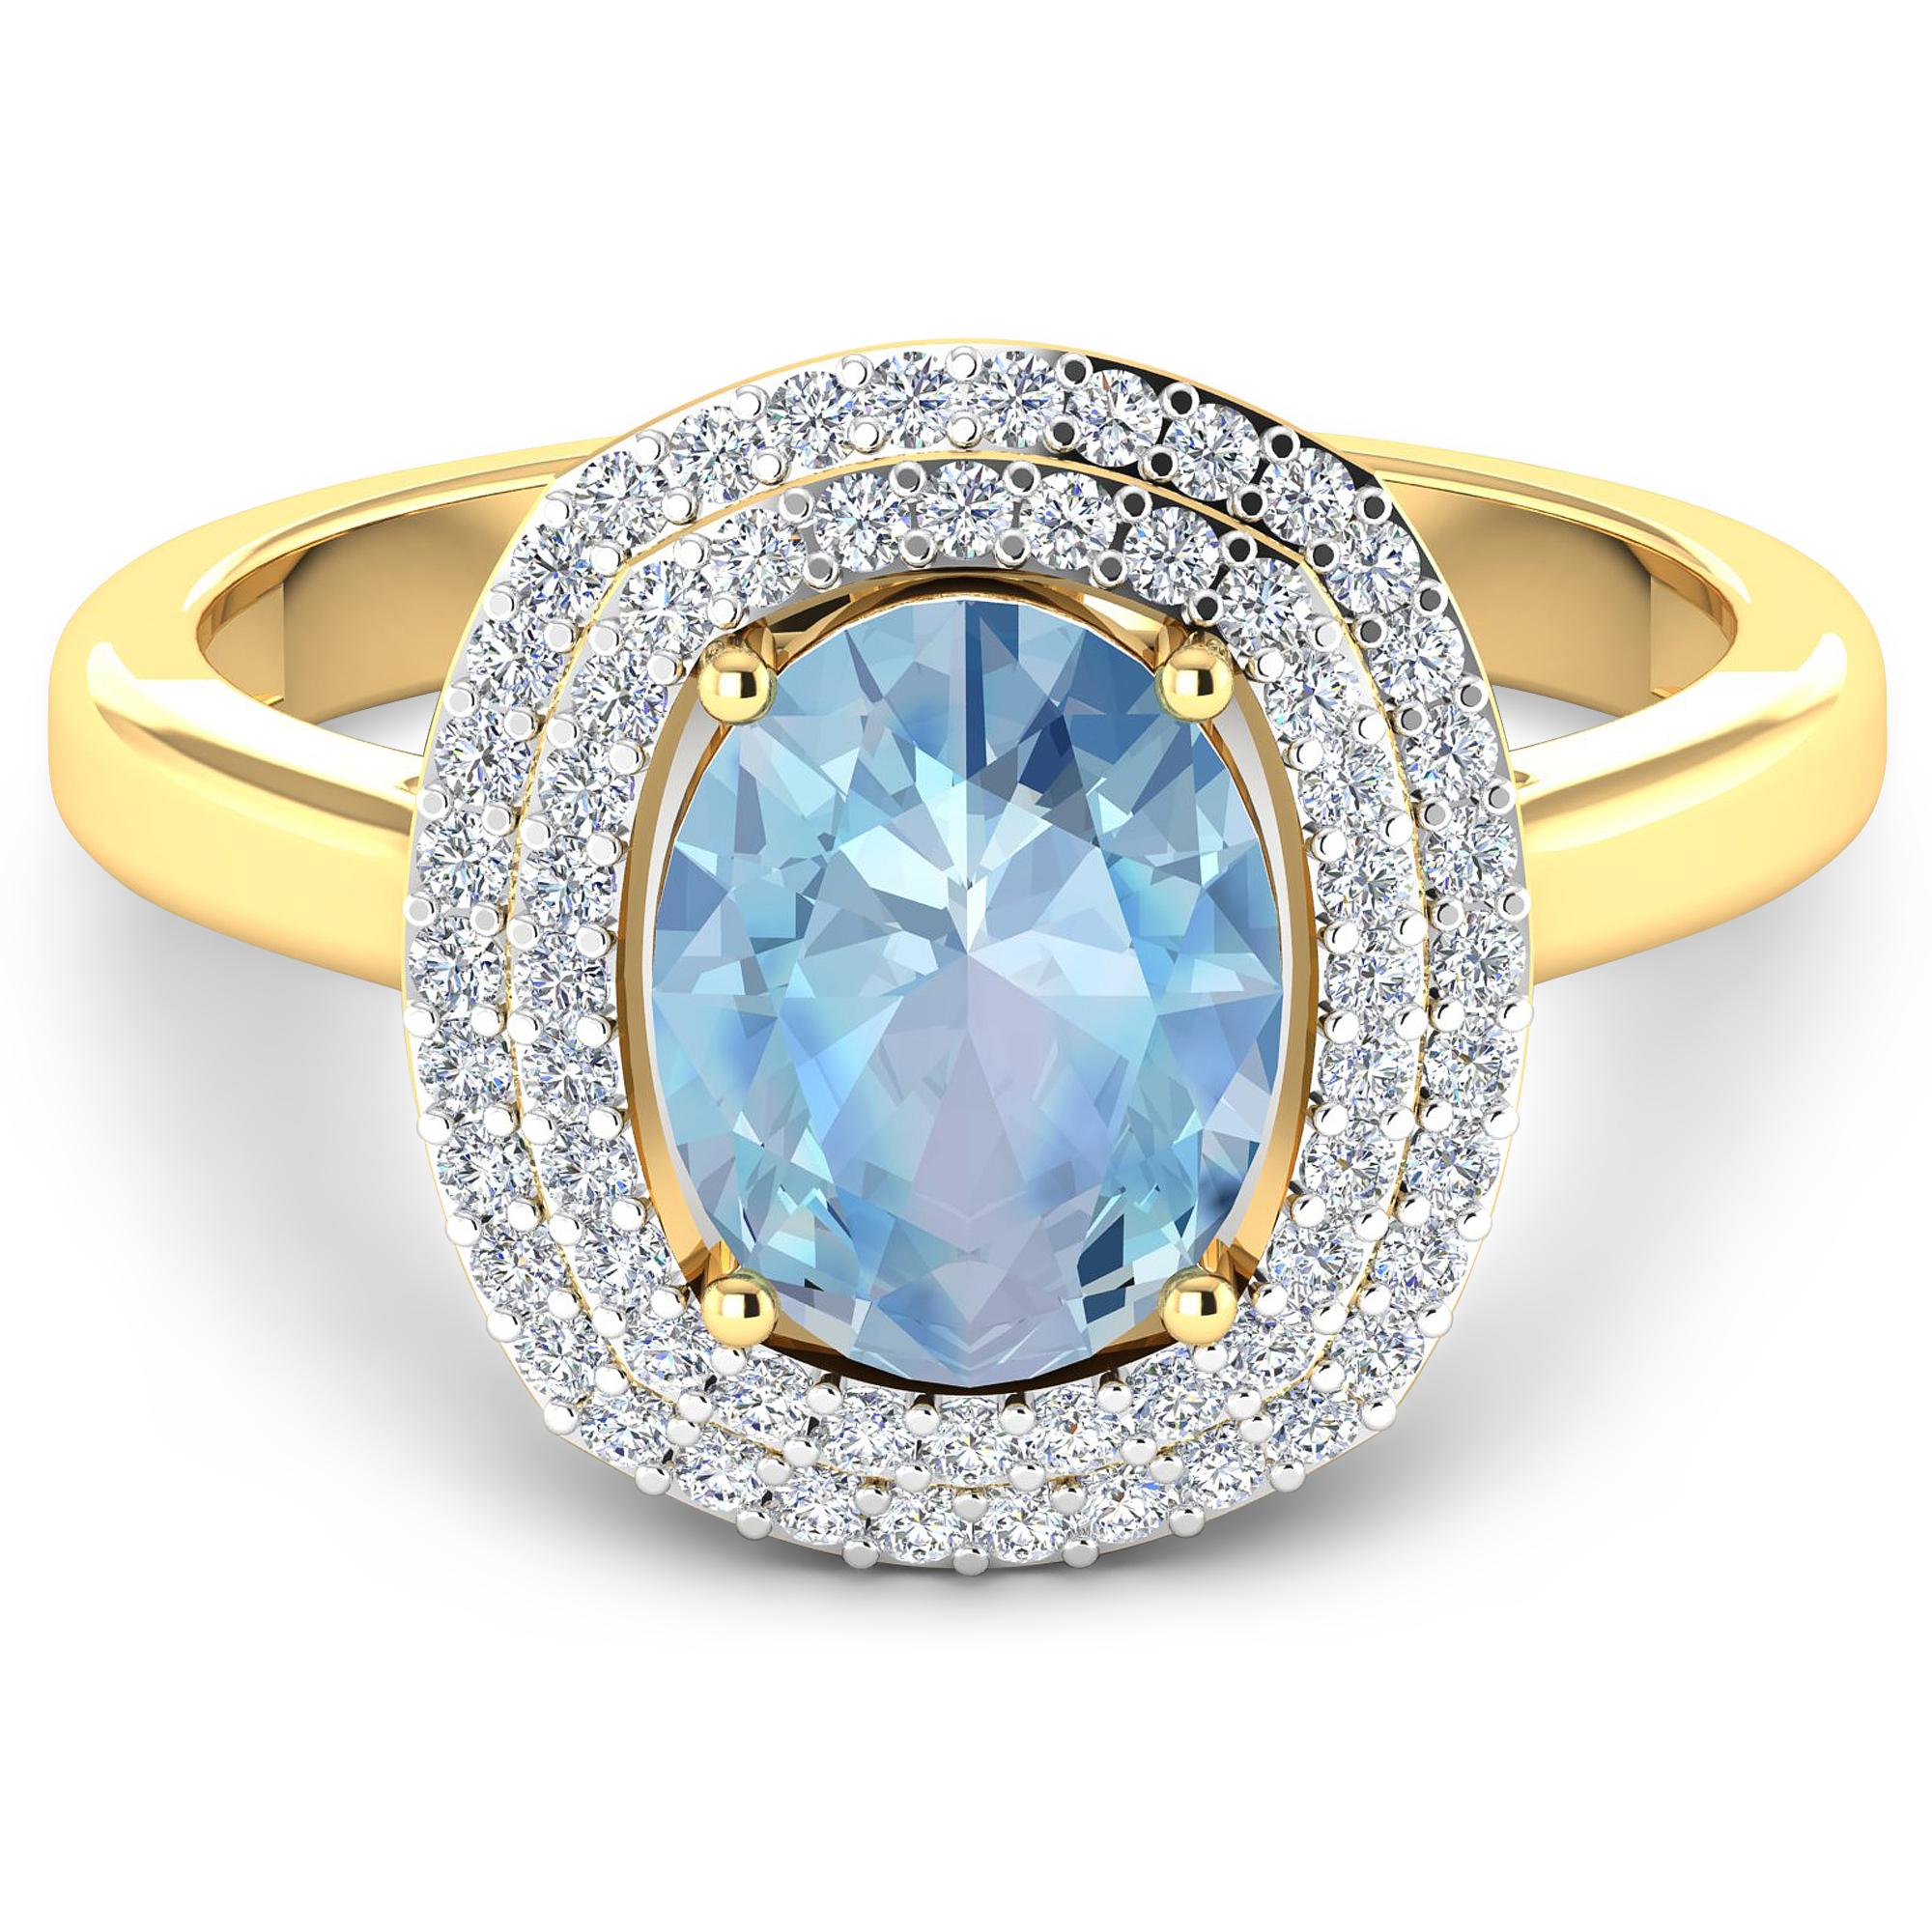 Contemporary Aquamarine Gold Ring, 14 Karat Gold Aquamarine and Diamond Ring, 1.68 Carat For Sale